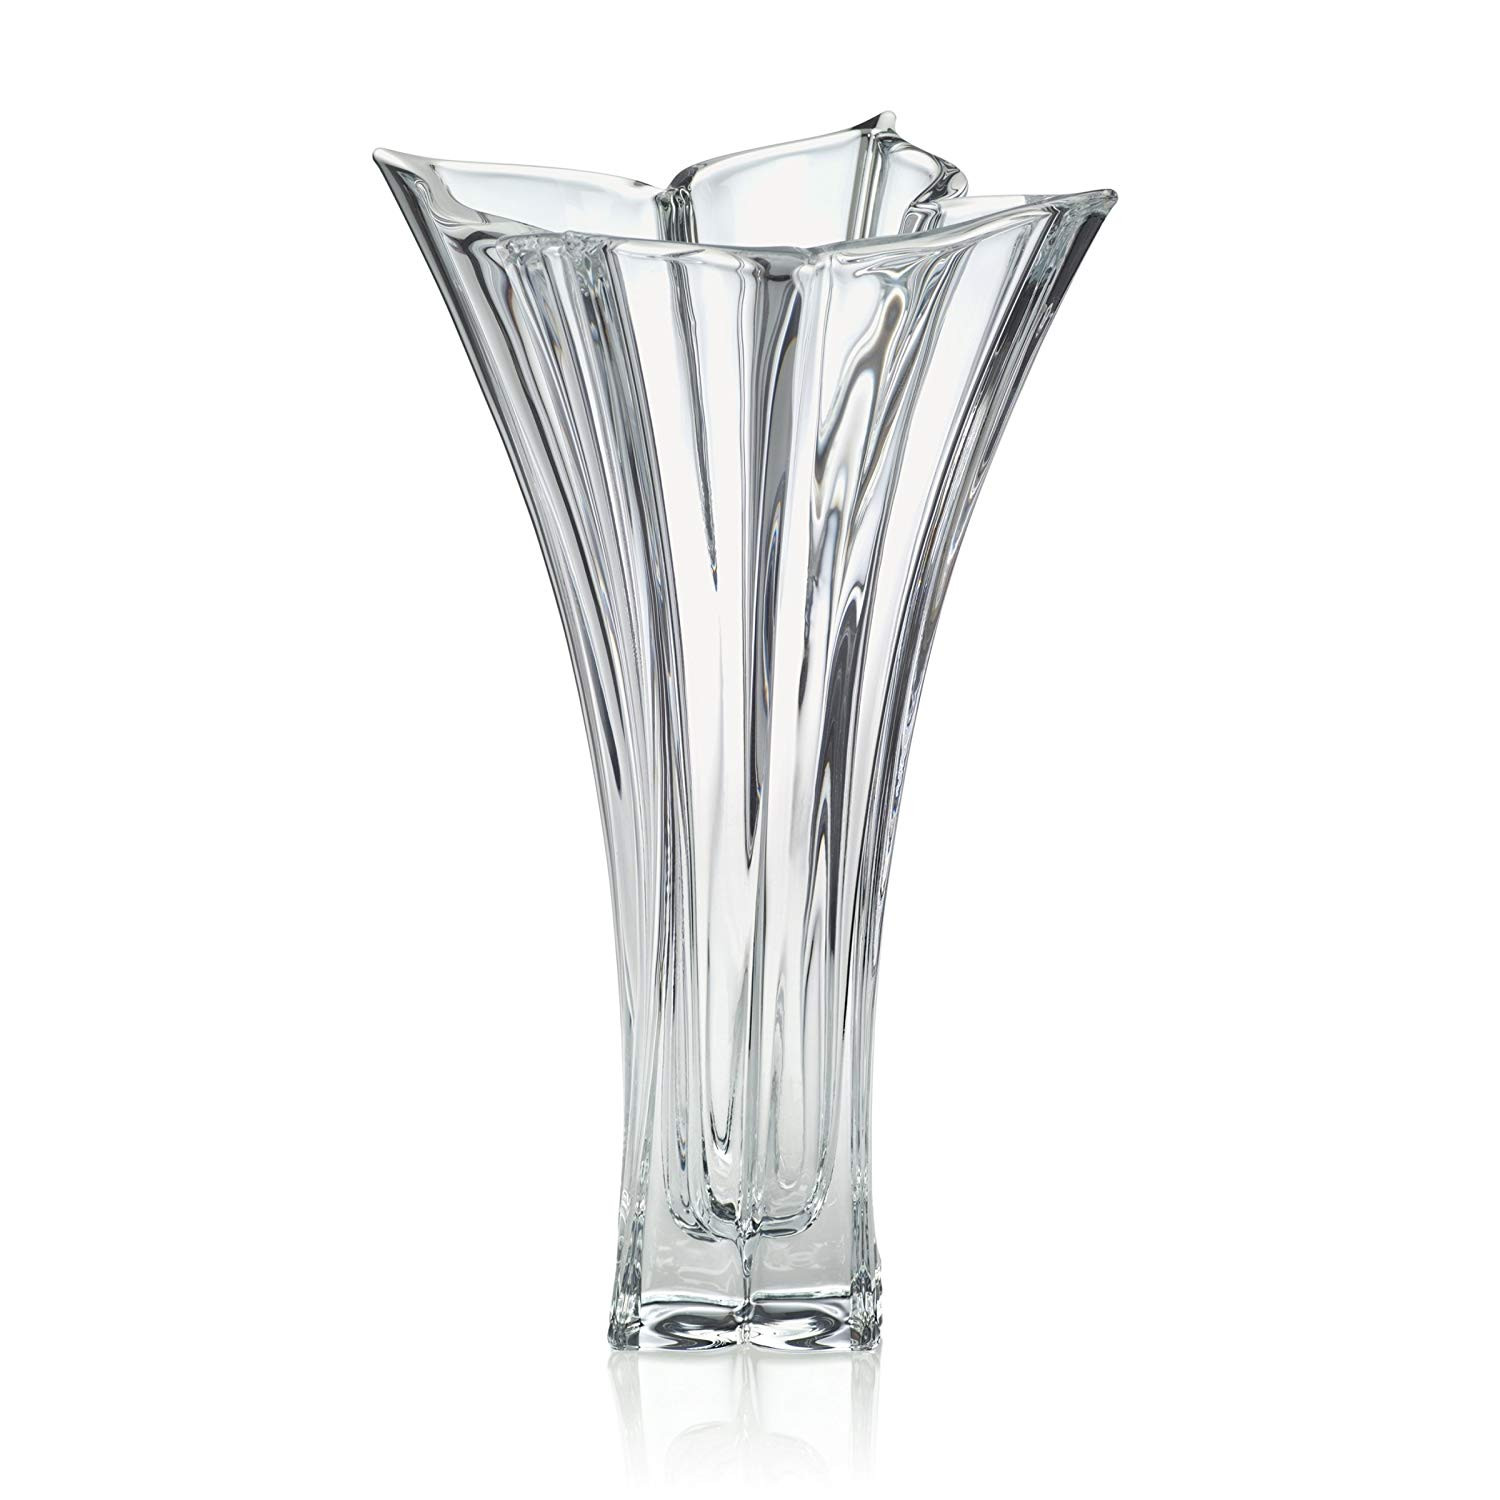 21 Ideal Mikasa Blossom Crystal Vase 2022 free download mikasa blossom crystal vase of amazon com mikasa crystal florale crystal vase 14 inch home kitchen intended for 810frtzhvvl sl1500